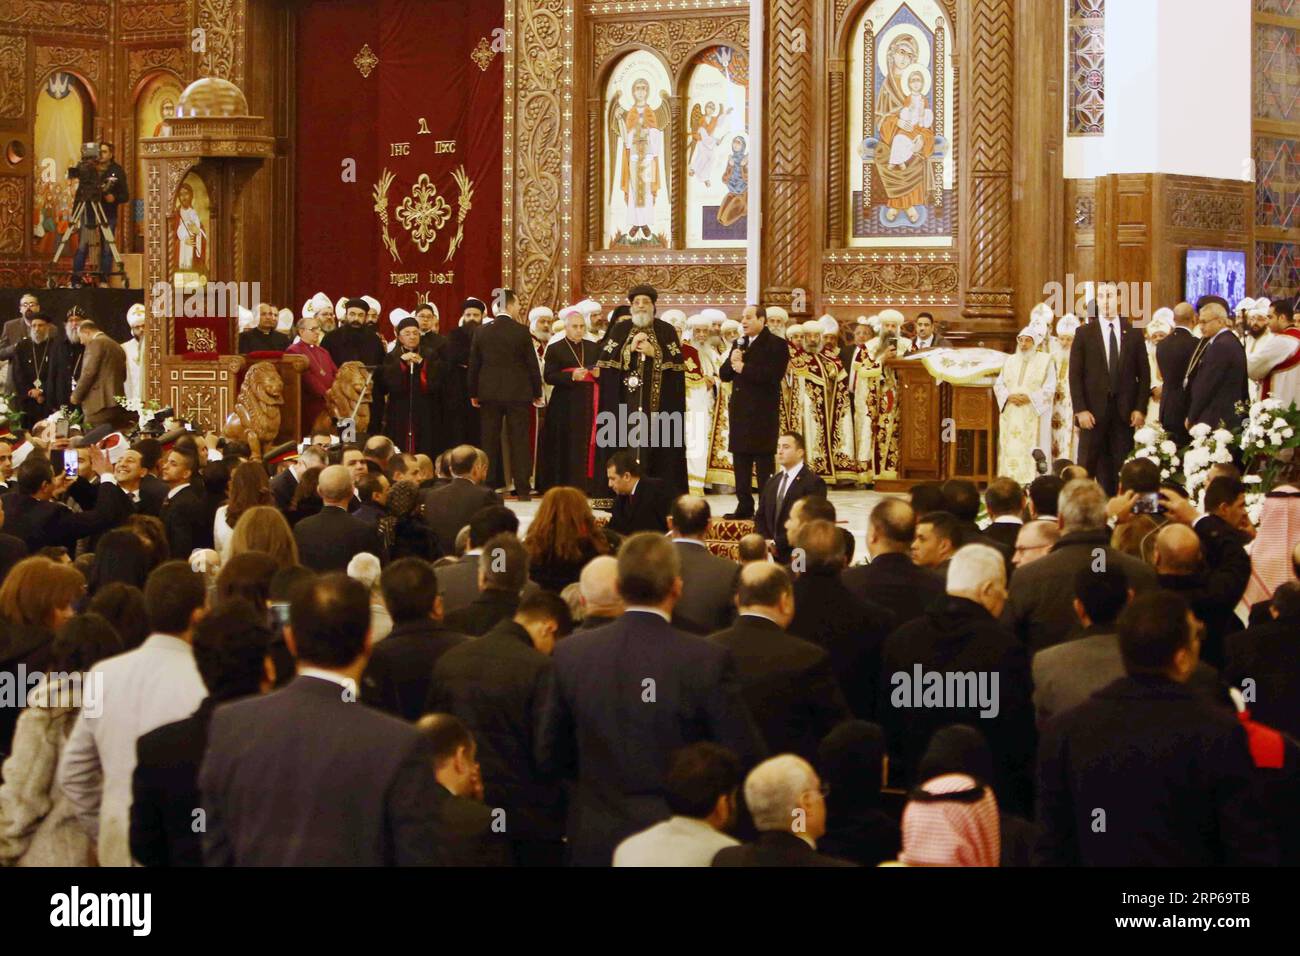 (190107) -- LE CAIRE, 7 janvier 2019 -- le président égyptien Abdel Fattah al-Sisi (R, central) prend la parole lors d'une messe de Noël orthodoxe copte à la nouvelle cathédrale de la Nativité du Christ dans la nouvelle capitale administrative de l'Égypte, à environ 50 km à l'est du Caire, en Égypte, le 6 janvier 2019.) EGYPTE-CAIRE-COPT-MESSE DE NOËL AHMEDXGOMAA PUBLICATIONXNOTXINXCHN Banque D'Images